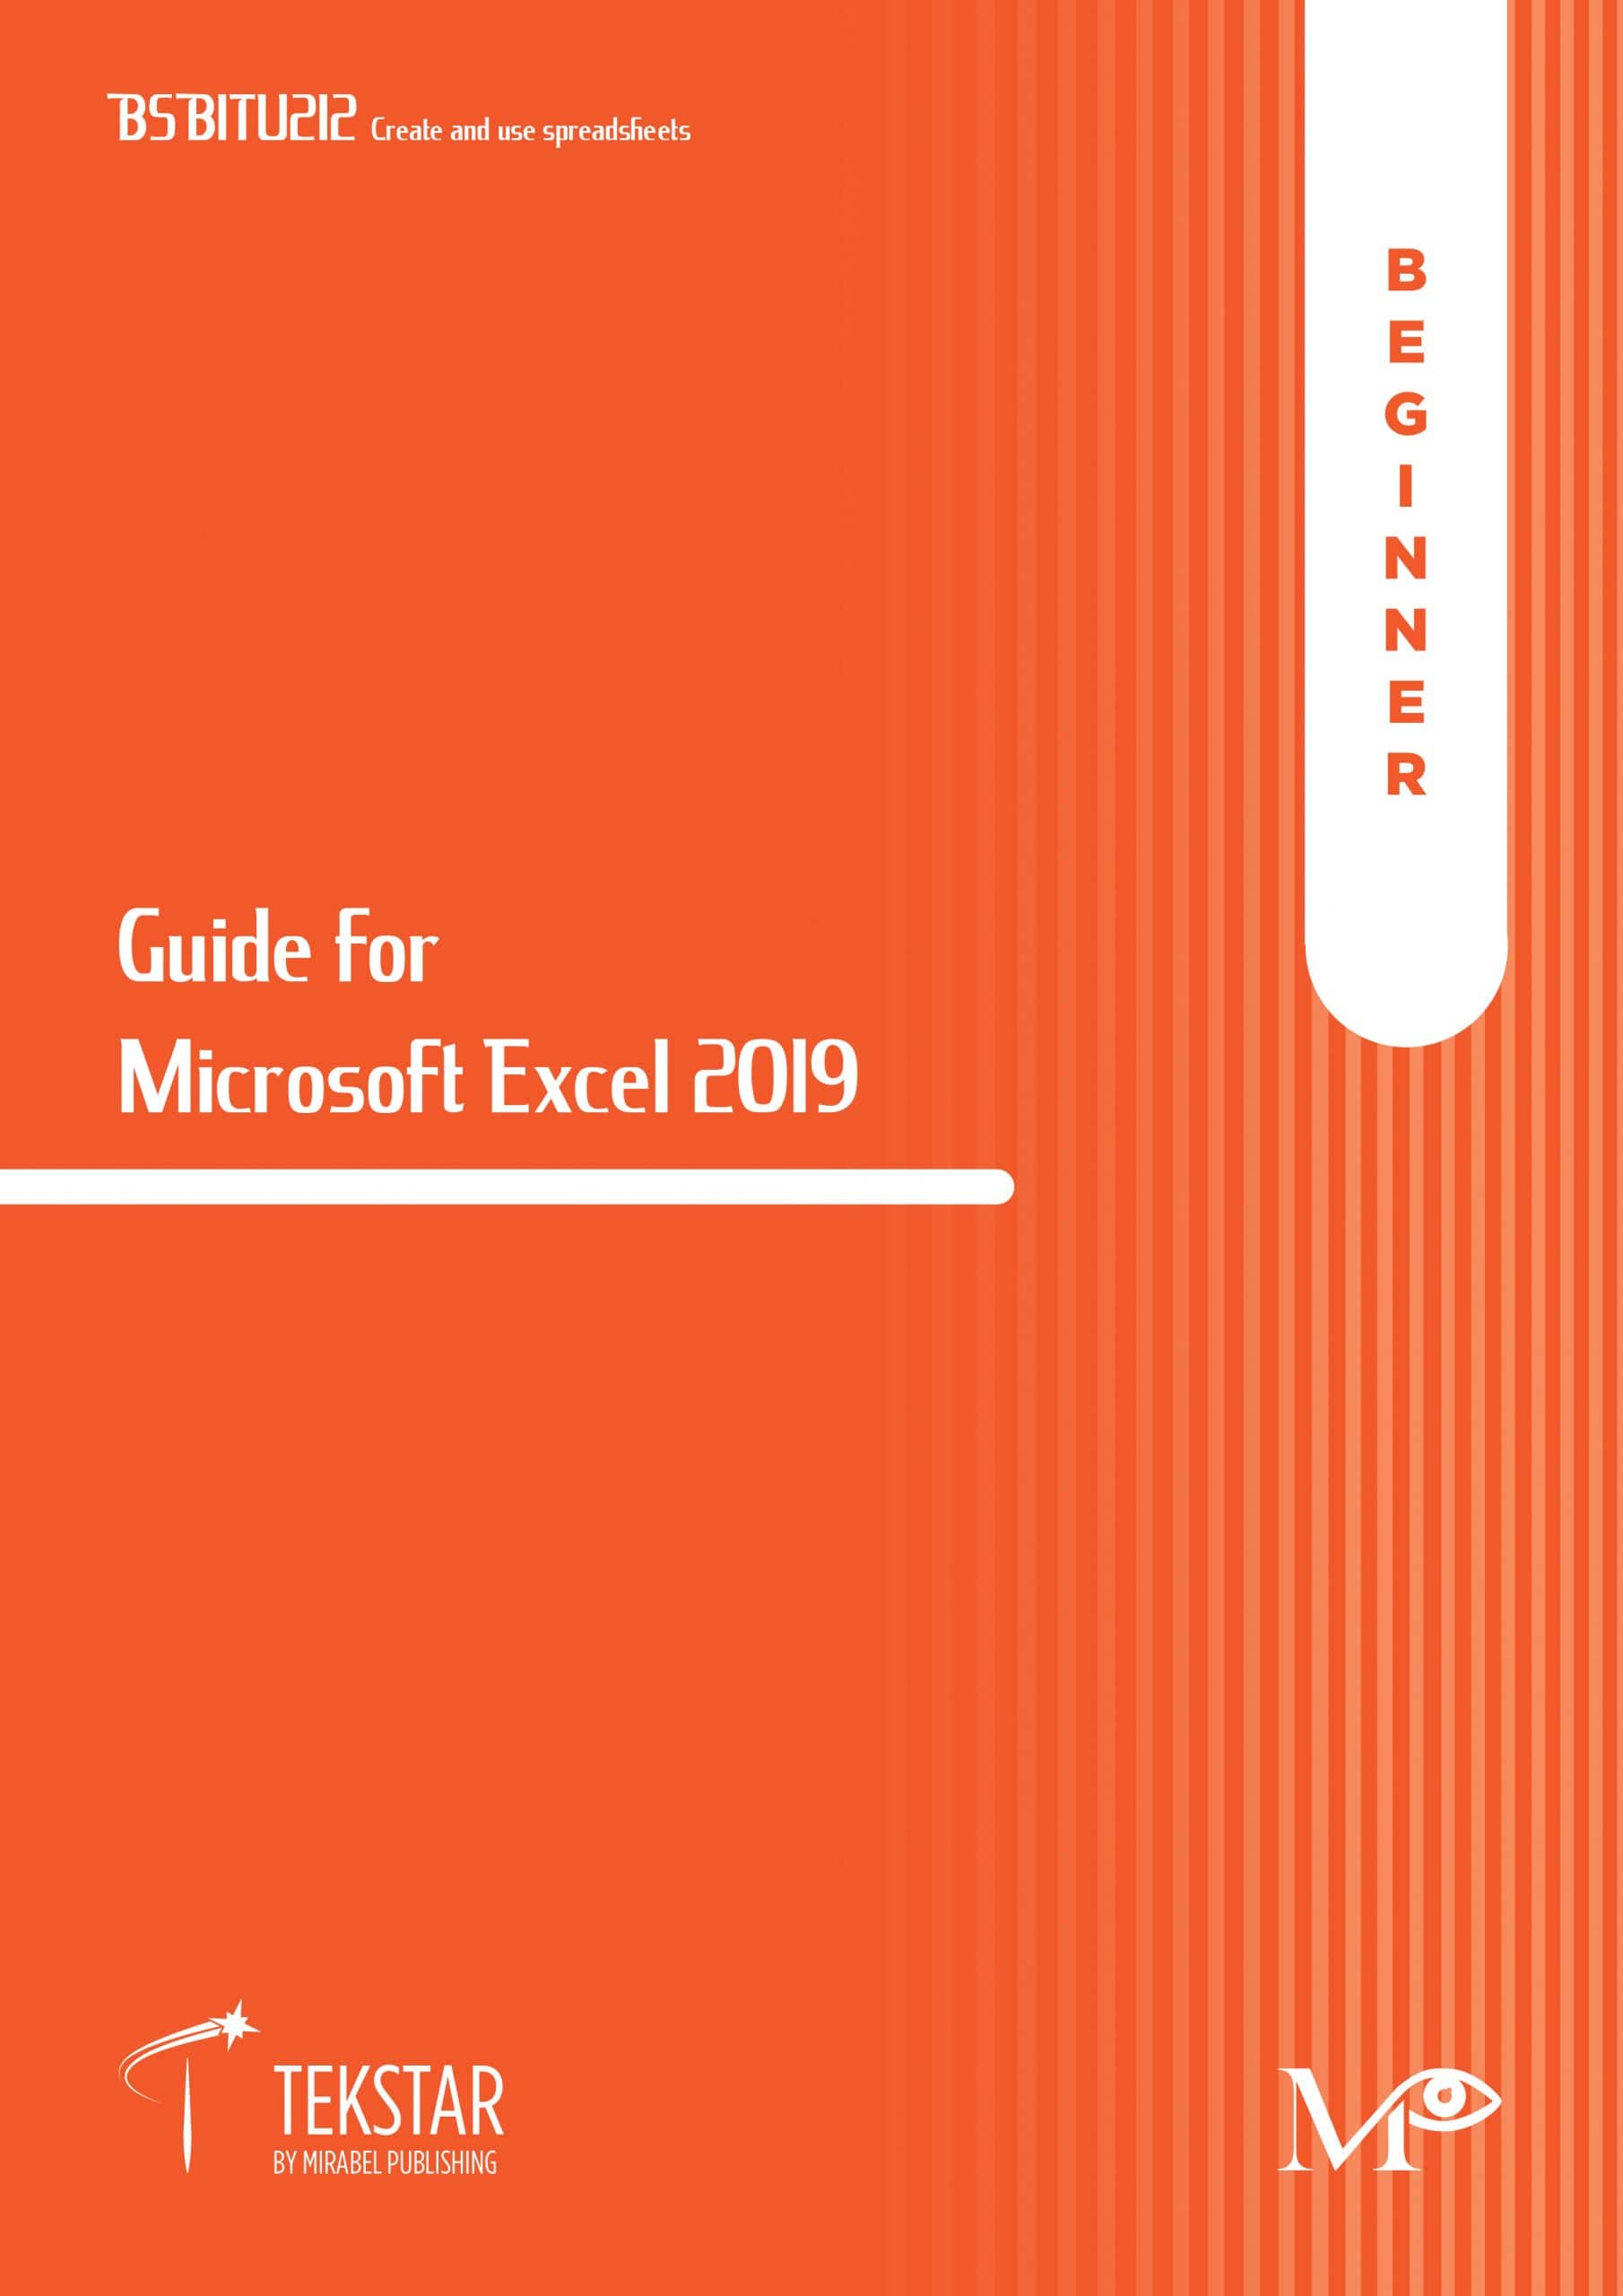 Guide for Microsoft Excel 2019 - Beginner